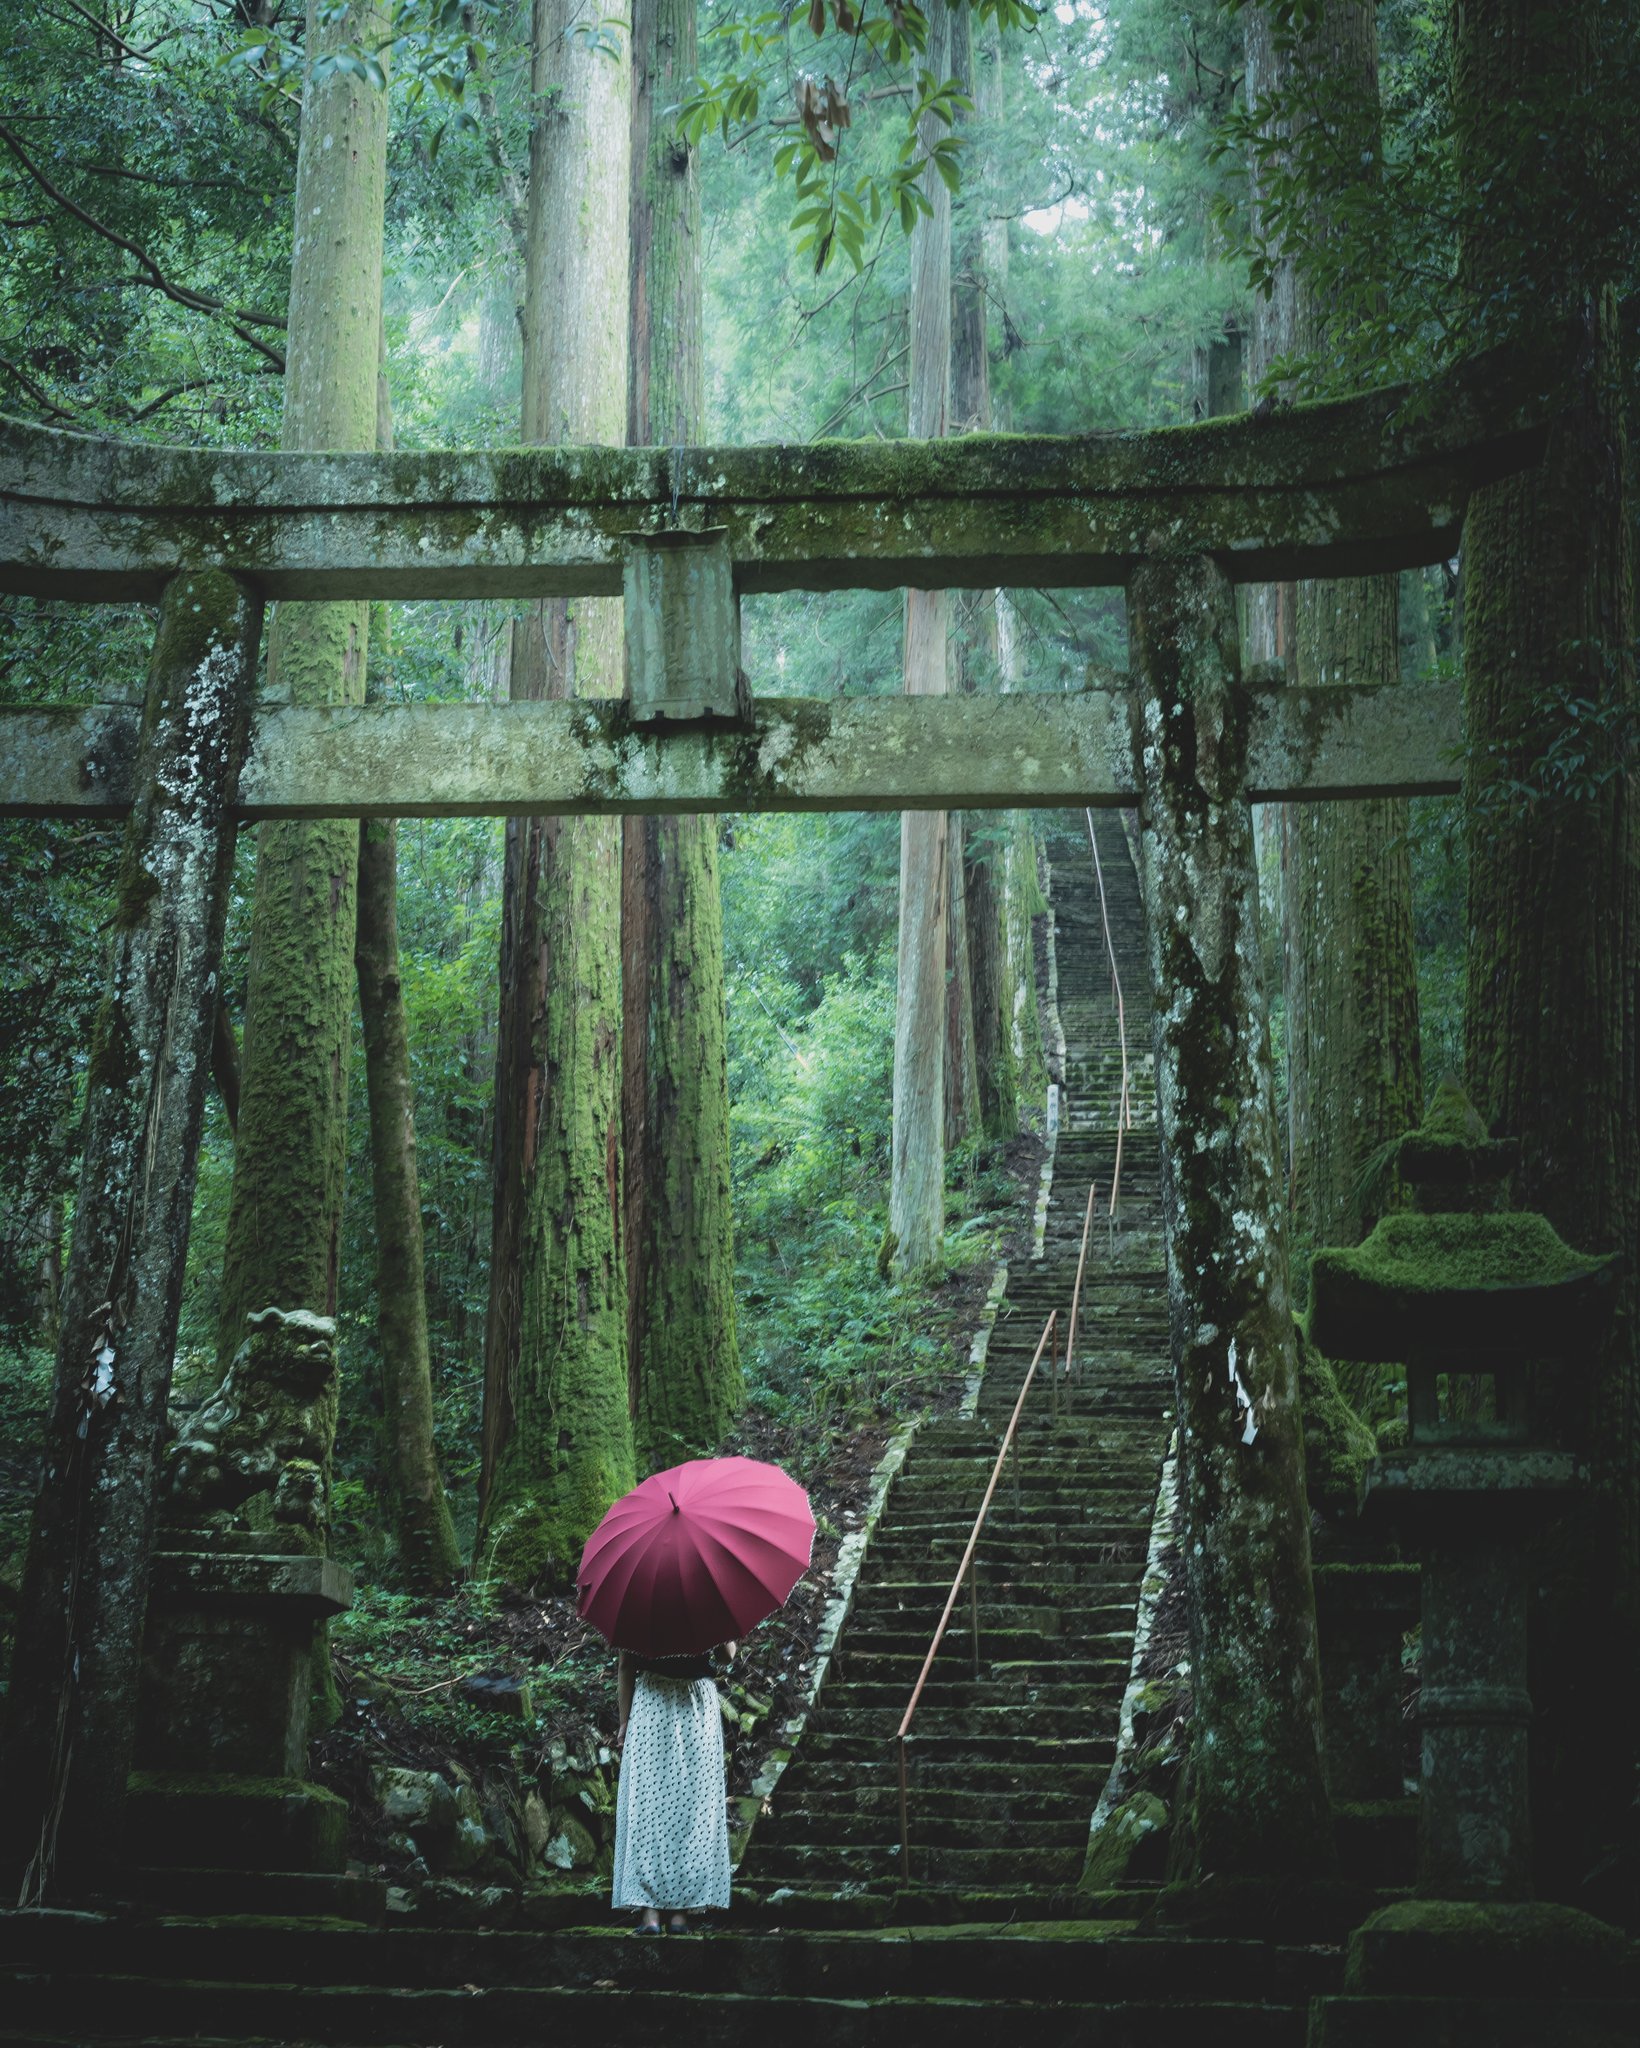 岐阜聖地巡礼者 Ksg World 6t71fnn5x6d05x4 瀧神社が神秘的で美しい 最初ツイがちらっと見えた時に奥行きや神秘的な感じから上色見熊野座神社かと思ってしまいました Twitter